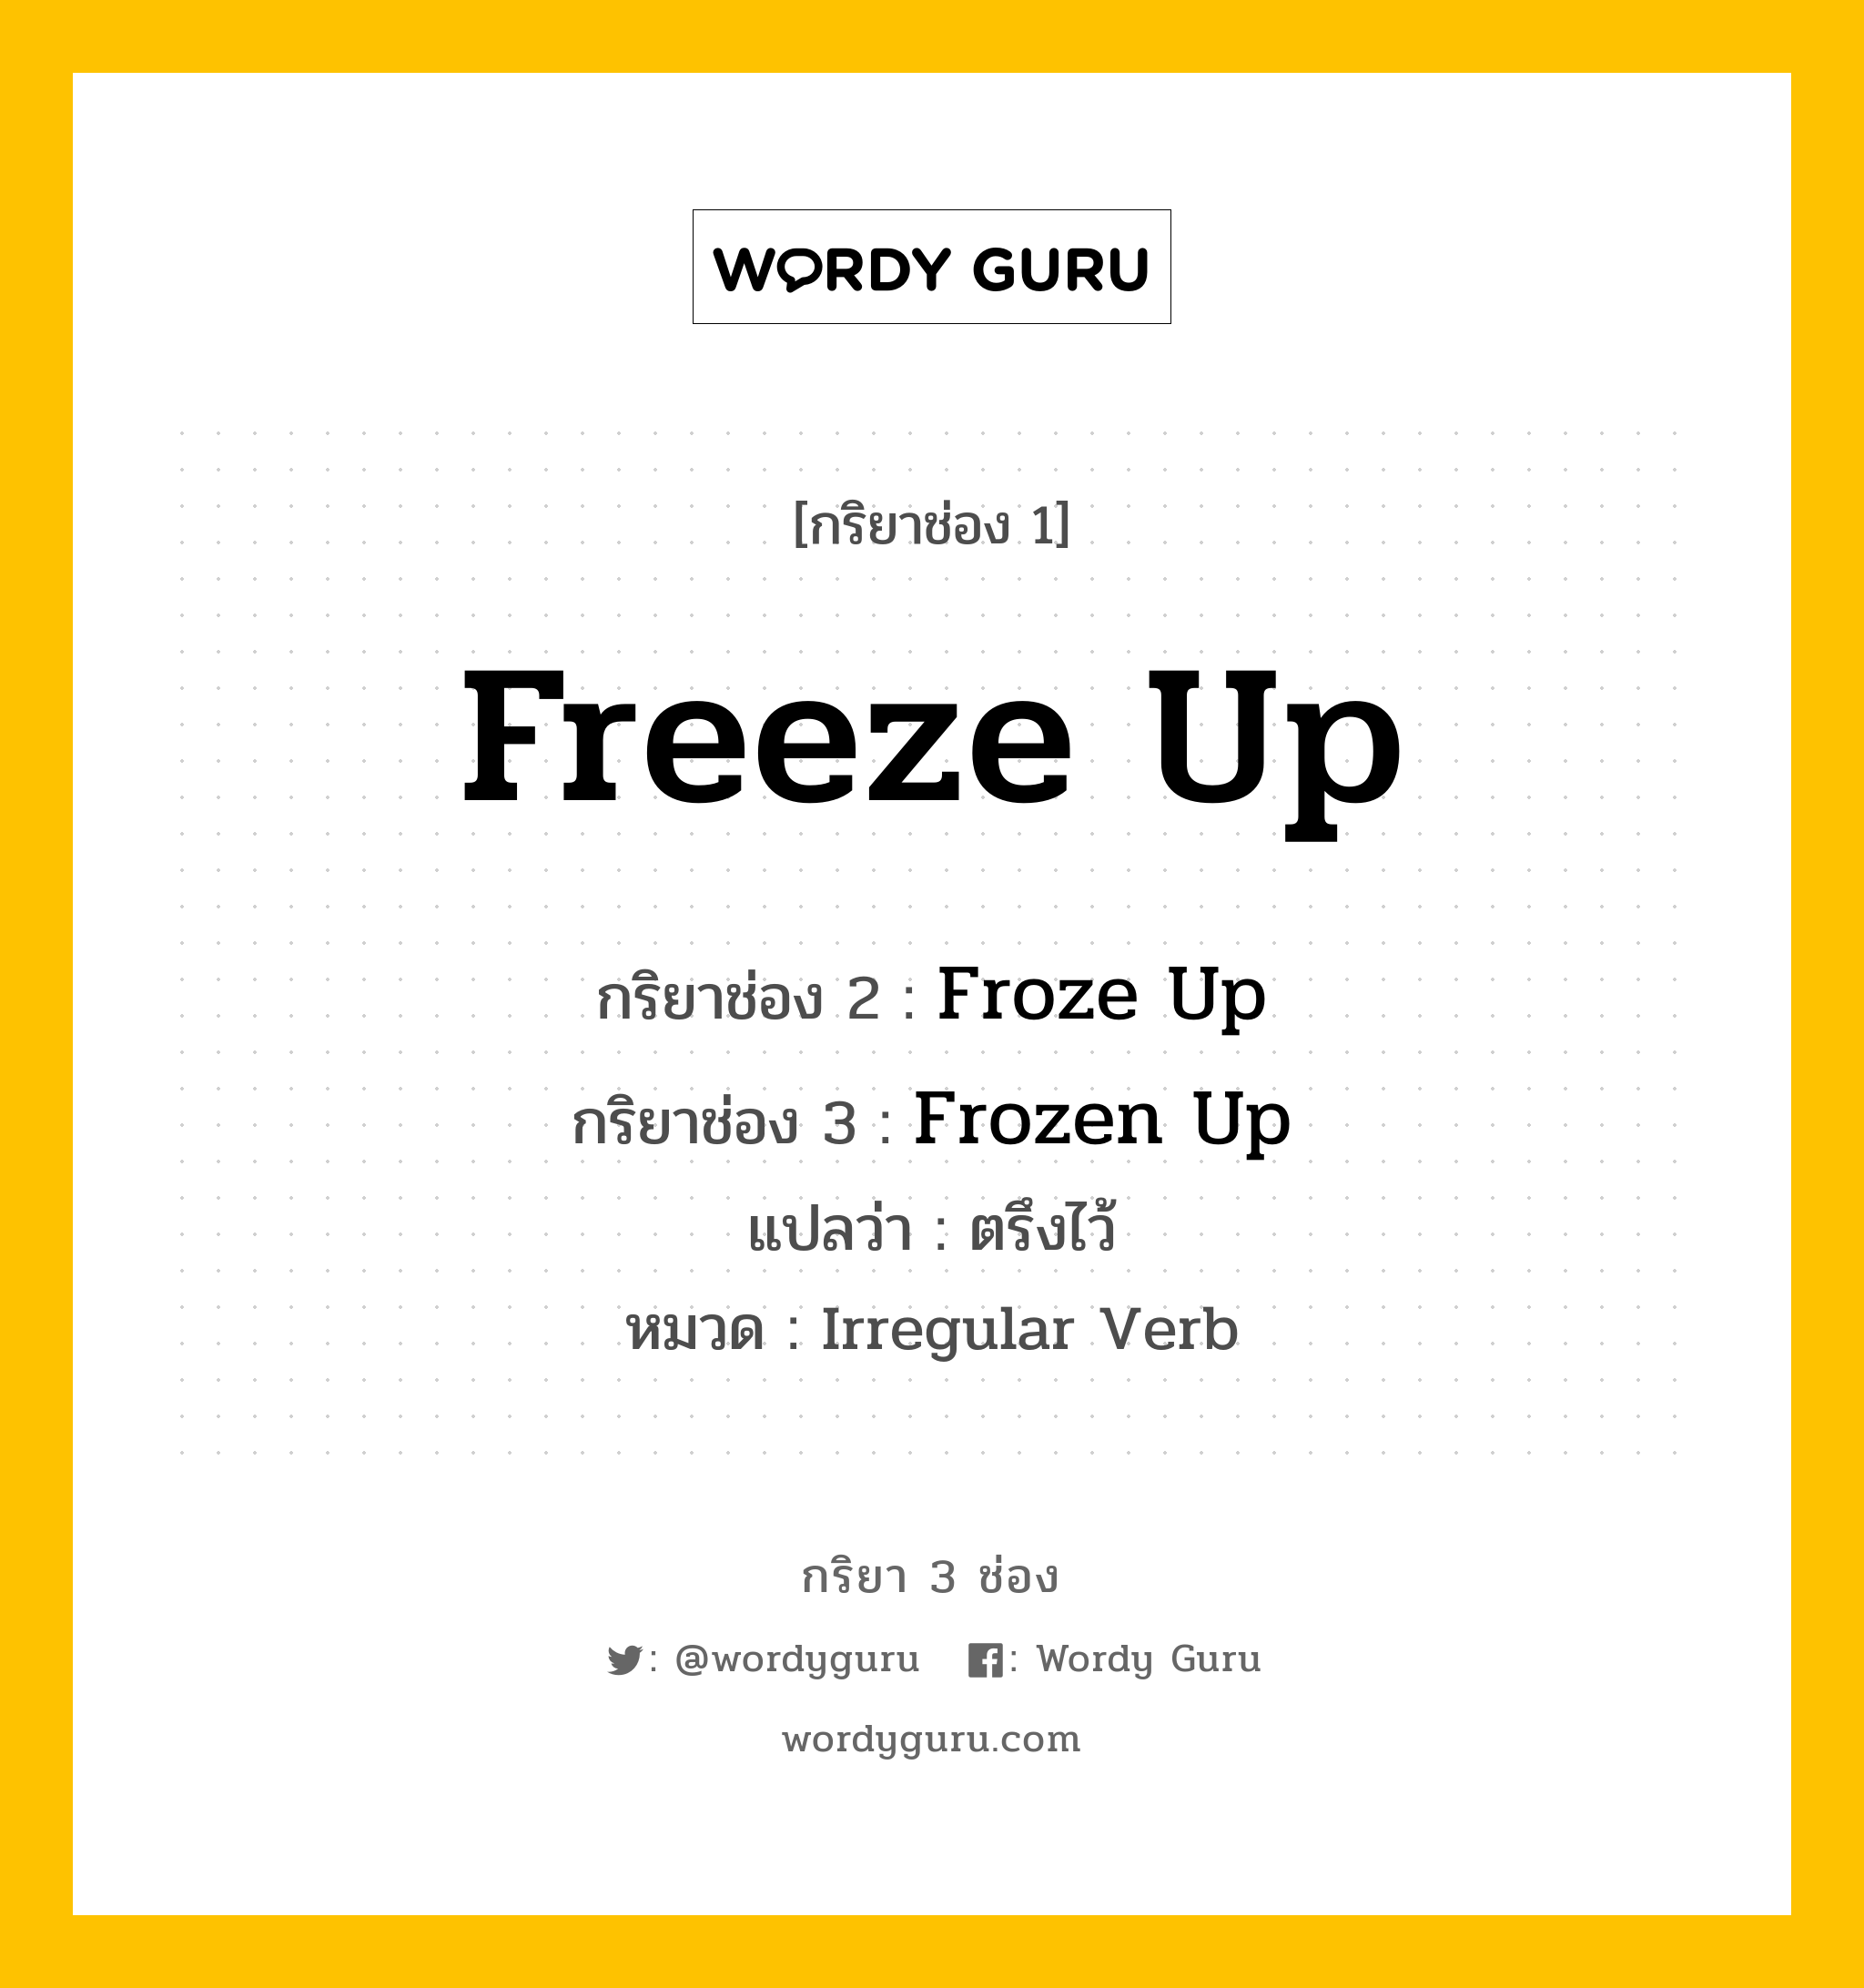 กริยา 3 ช่อง: Freeze Up ช่อง 2 Freeze Up ช่อง 3 คืออะไร, กริยาช่อง 1 Freeze Up กริยาช่อง 2 Froze Up กริยาช่อง 3 Frozen Up แปลว่า ตรึงไว้ หมวด Irregular Verb หมวด Irregular Verb